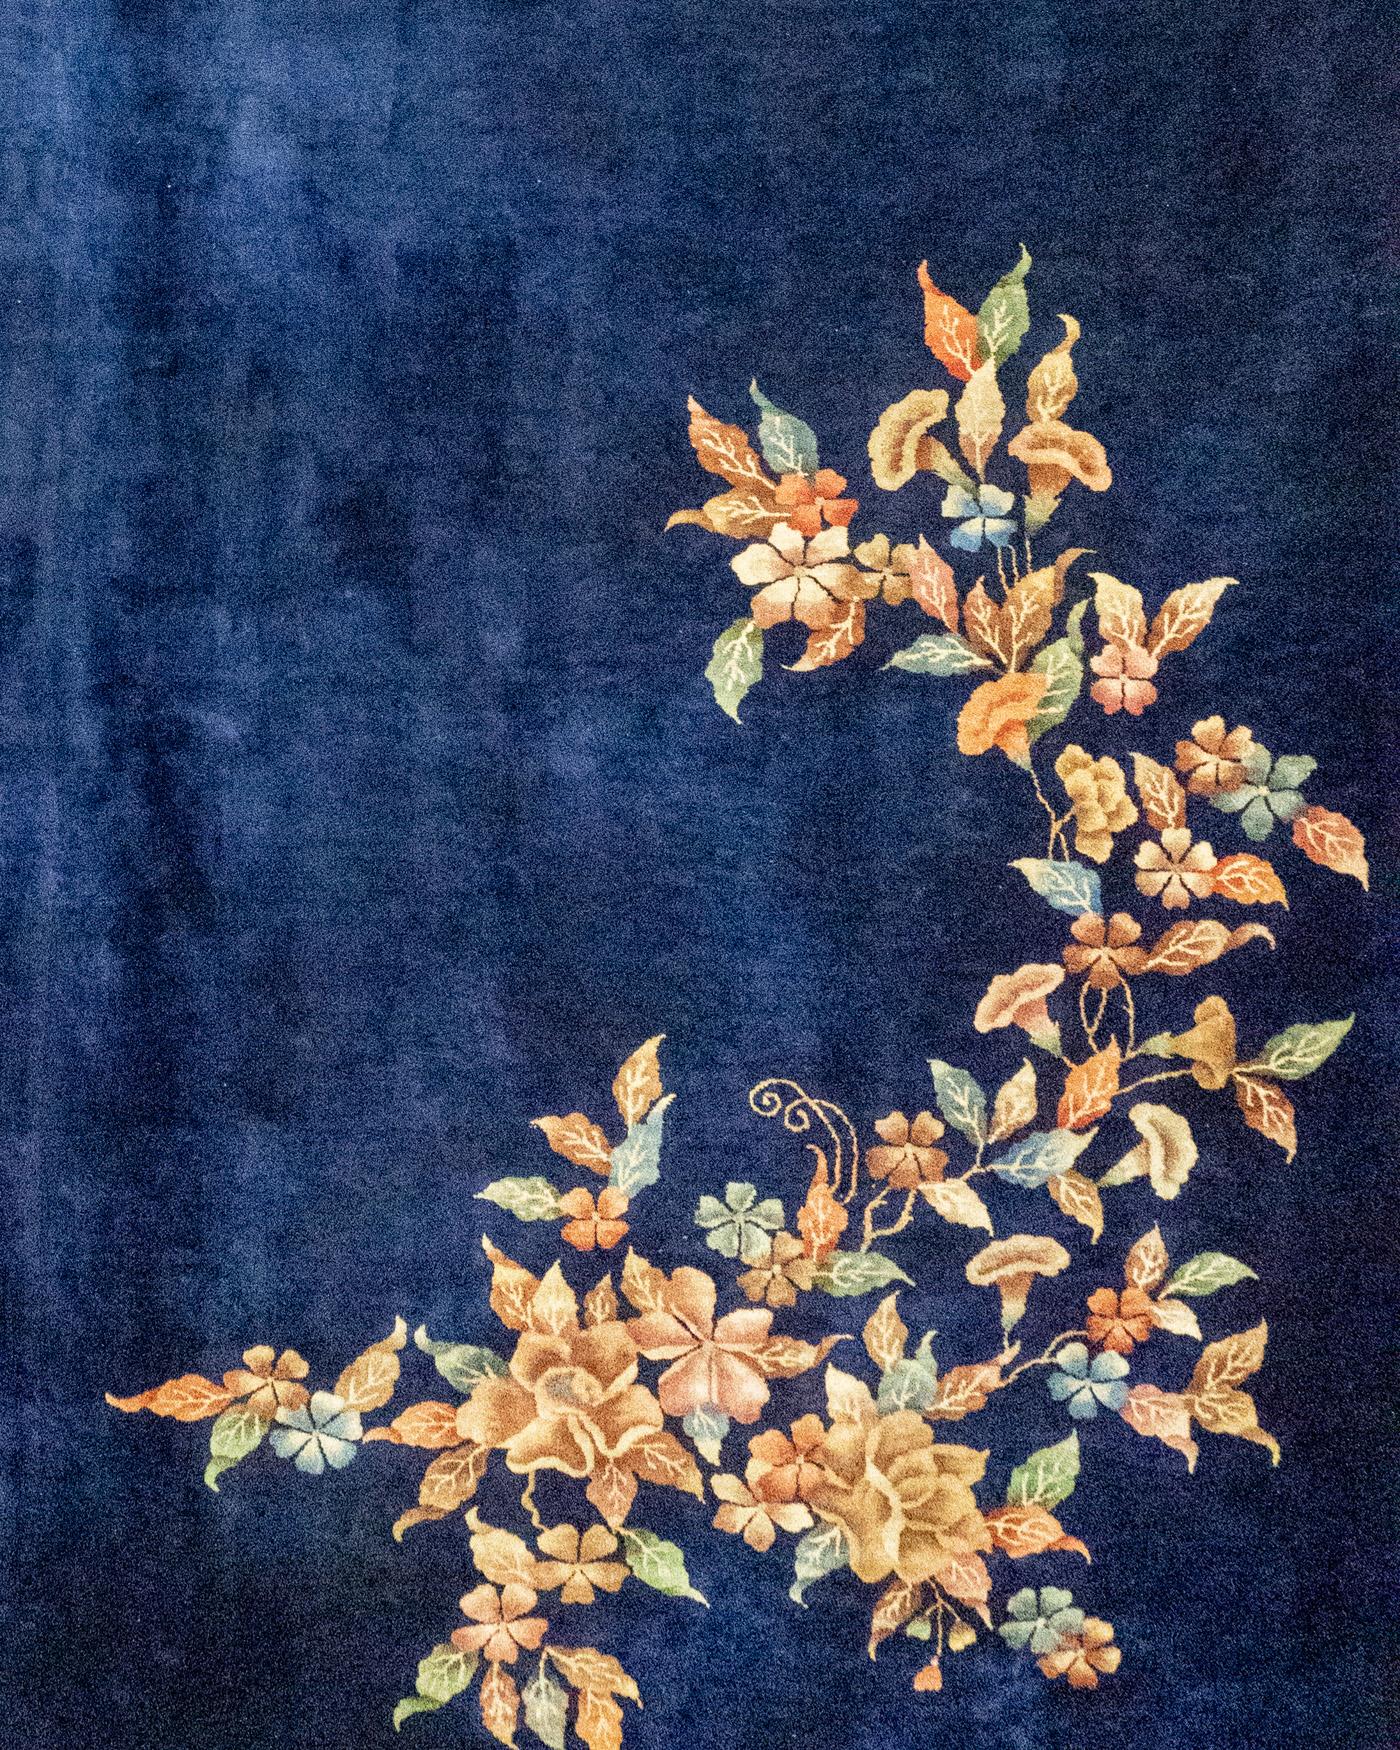 Ancien tapis chinois Art Déco 12' X 19'3. Un magnifique exemple de tapis chinois de style Art Déco, tissé vers 1920, avec un fond uni de couleur marine et dans deux coins opposés une charmante sélection de fleurs dans une variété de couleurs douces